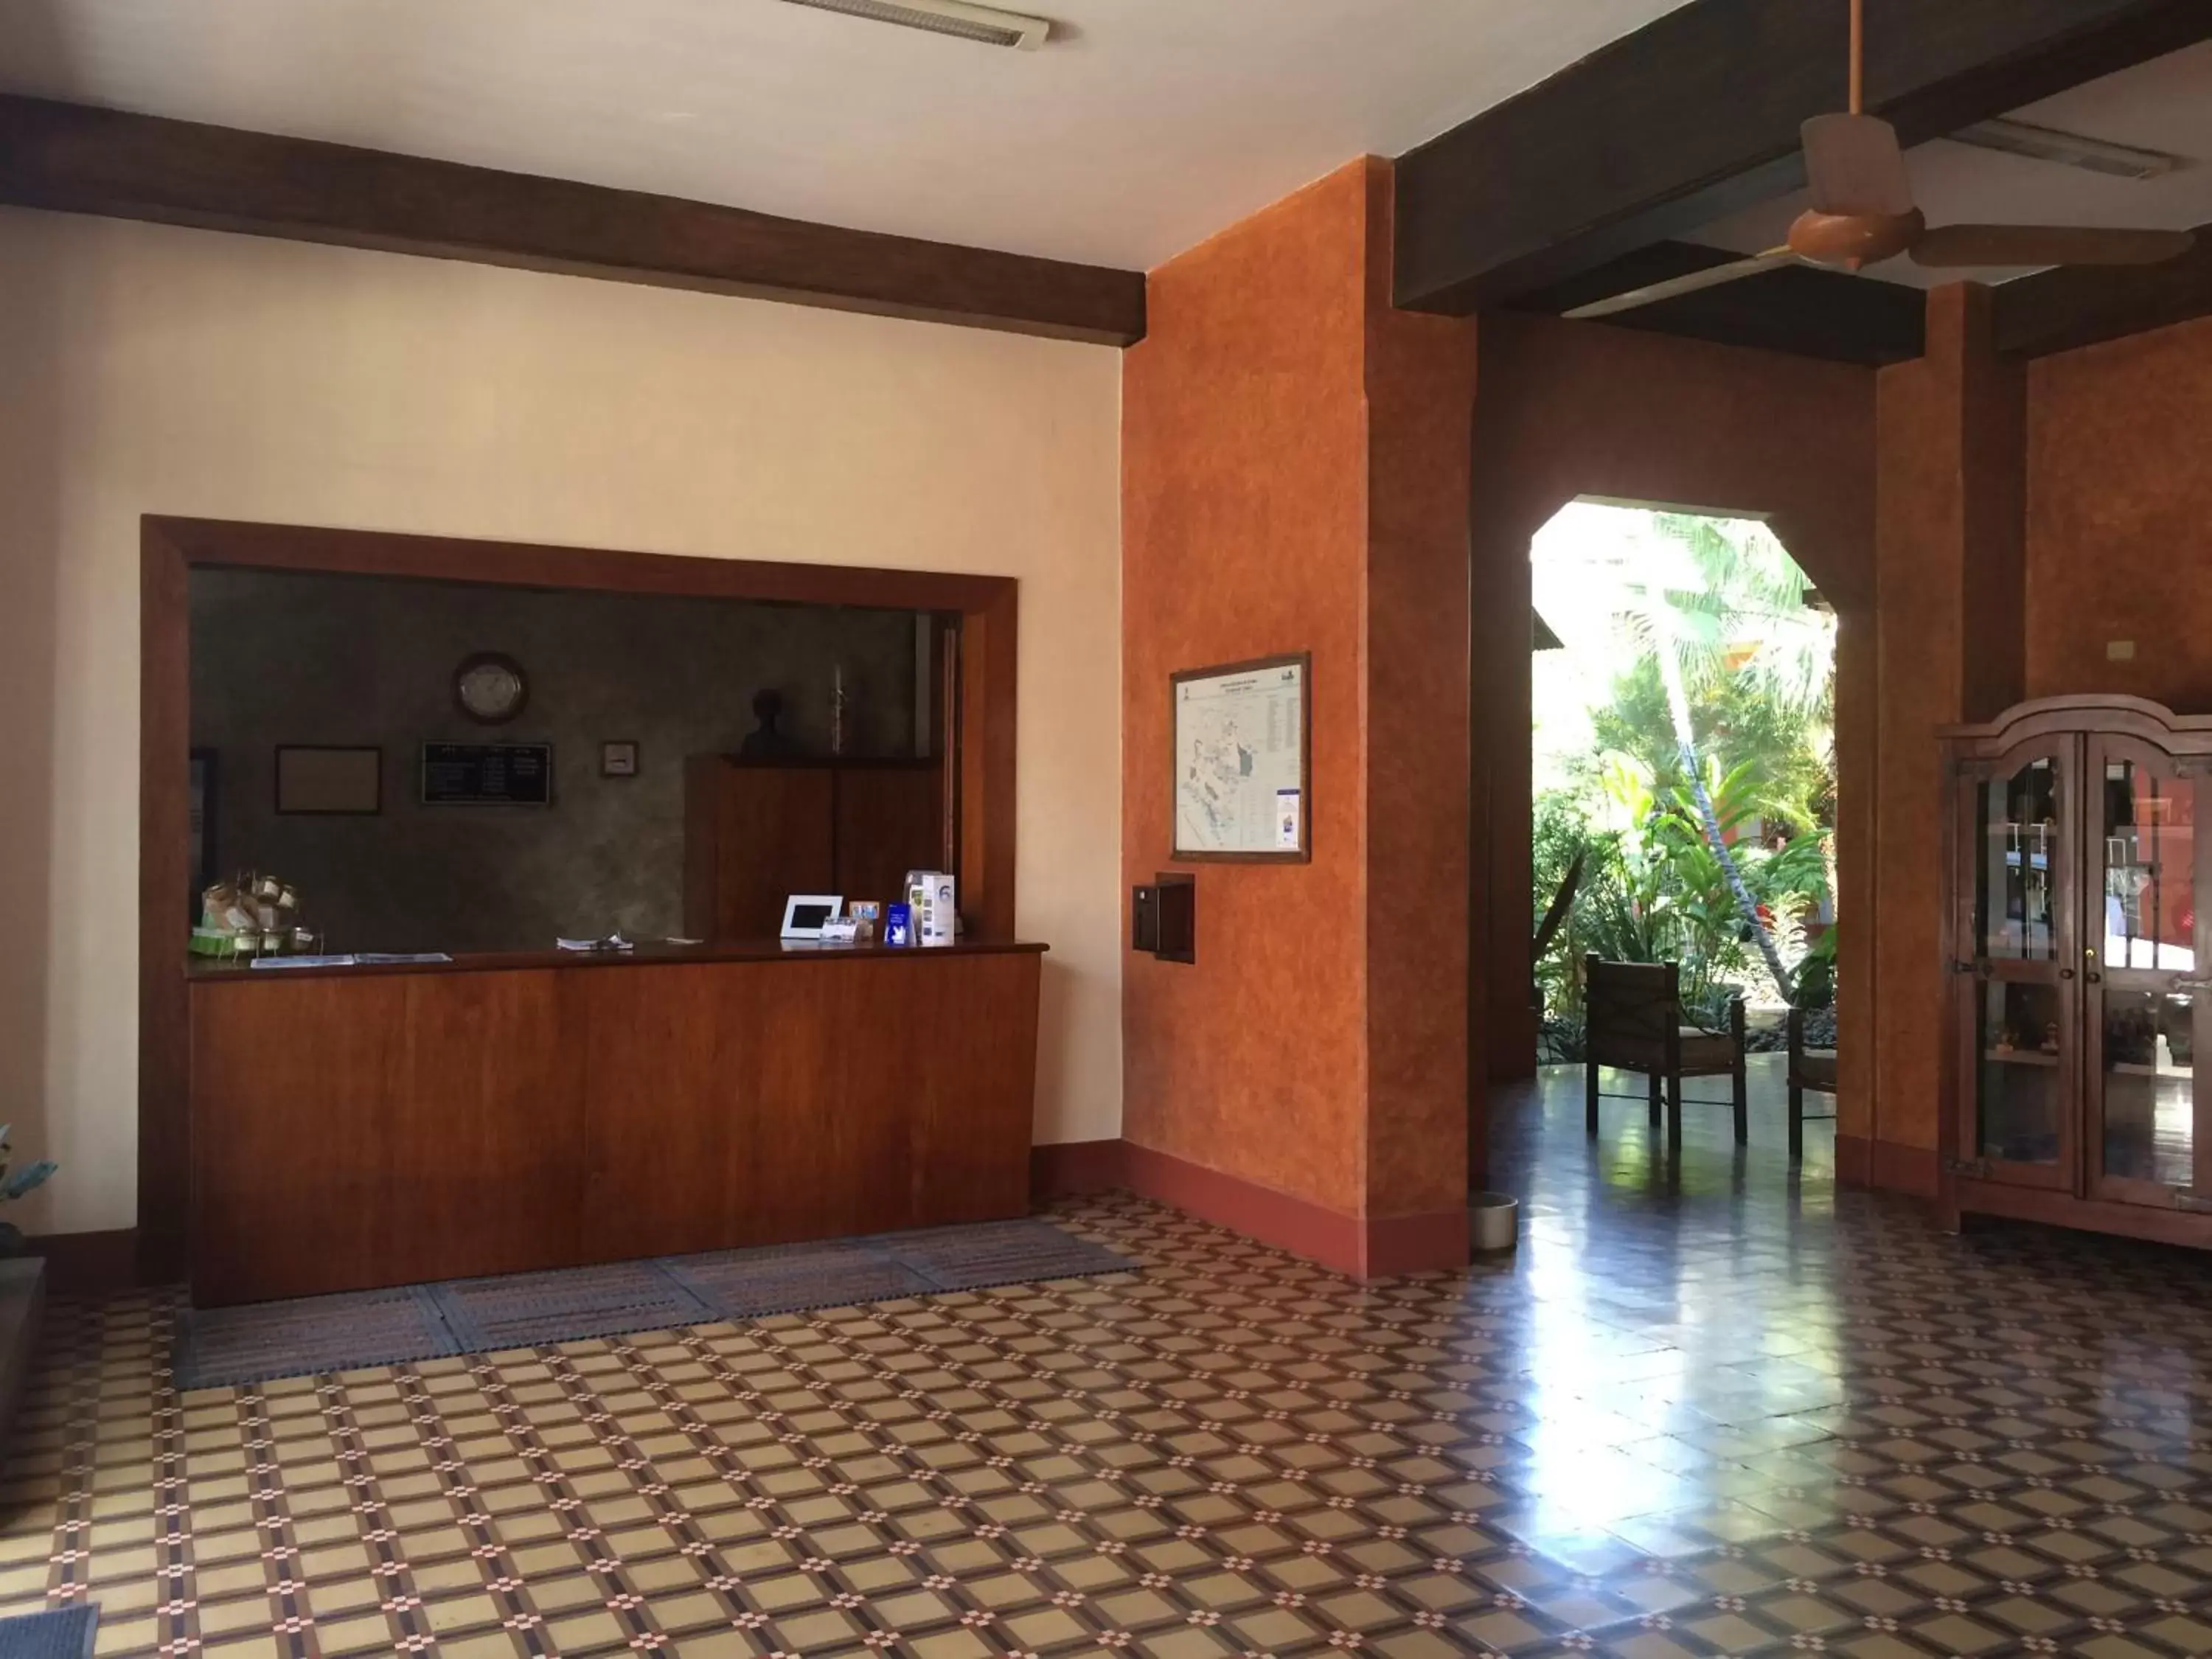 Lobby or reception, Lobby/Reception in Hotel Fenix